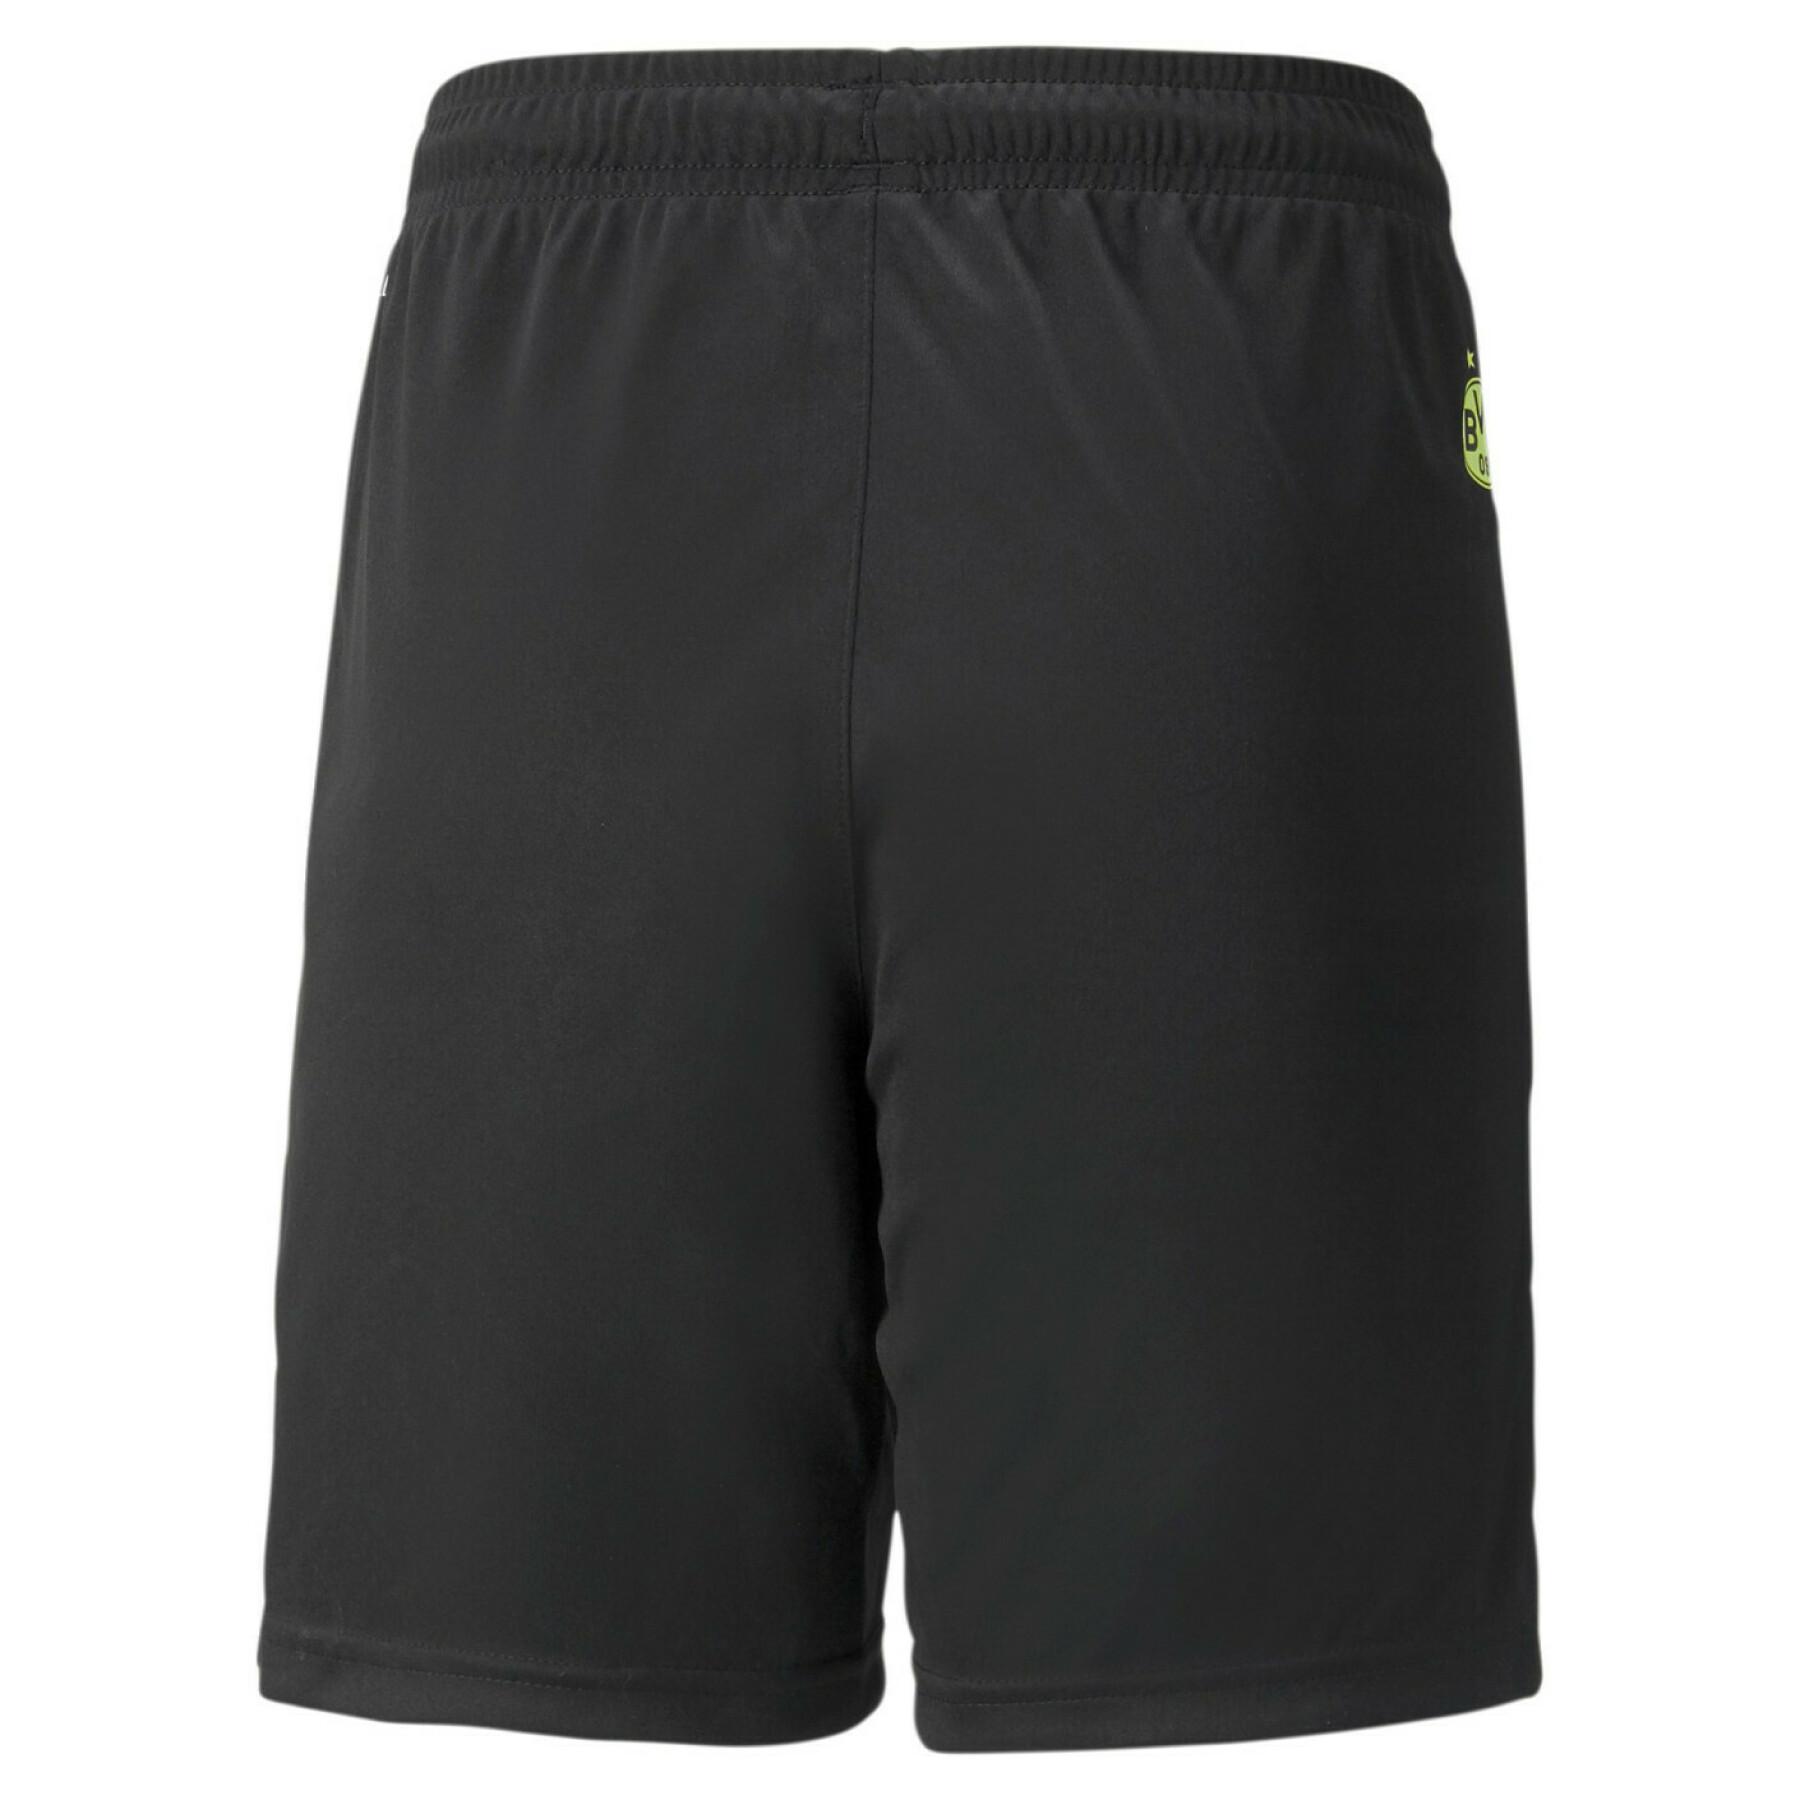 Children's shorts Borussia Dortmund